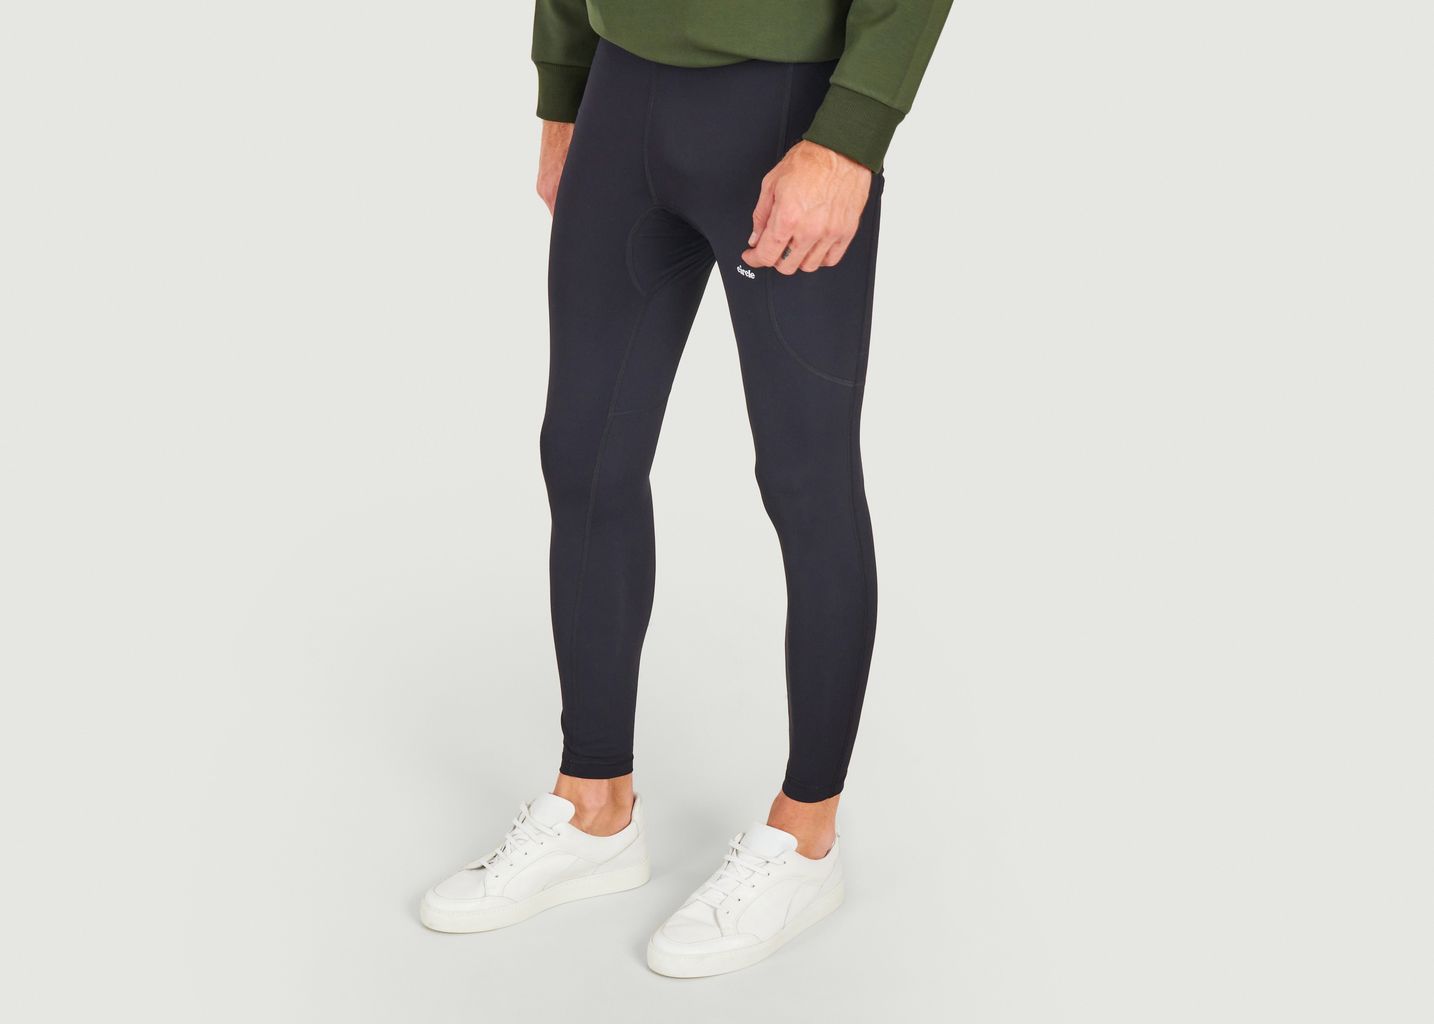 Legging running - Circle Sportswear